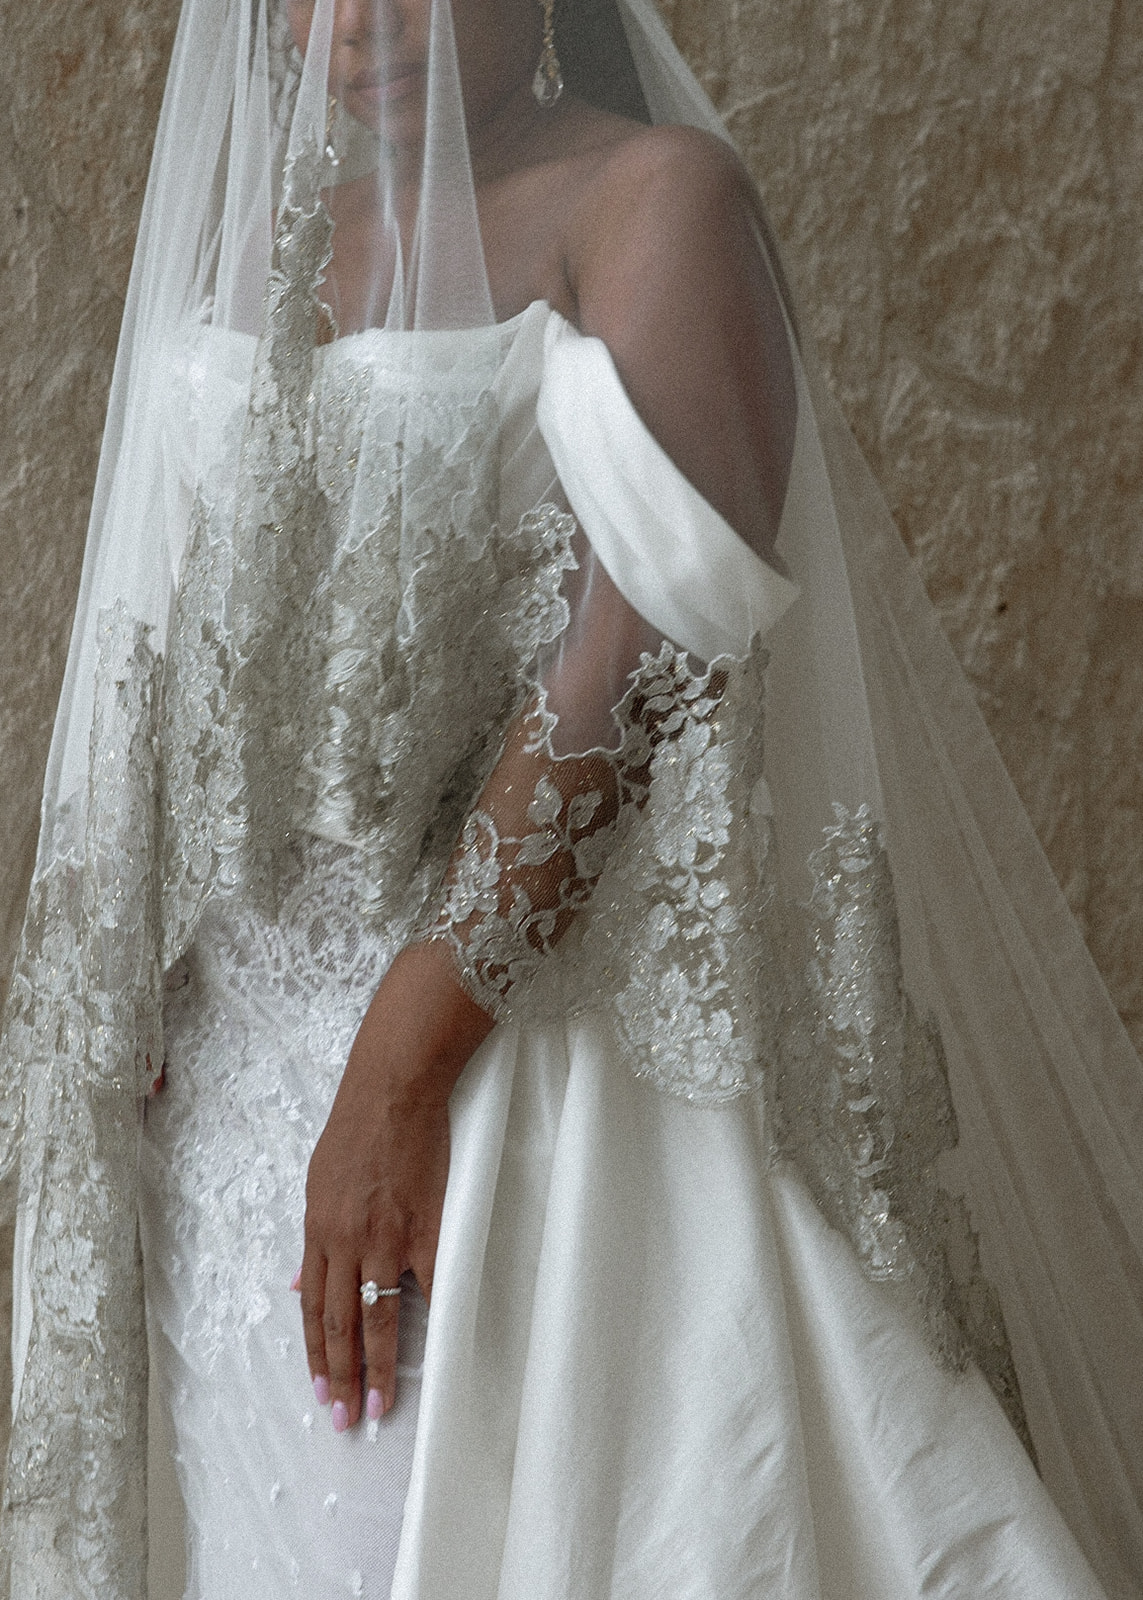 Lauren in a wedding dress